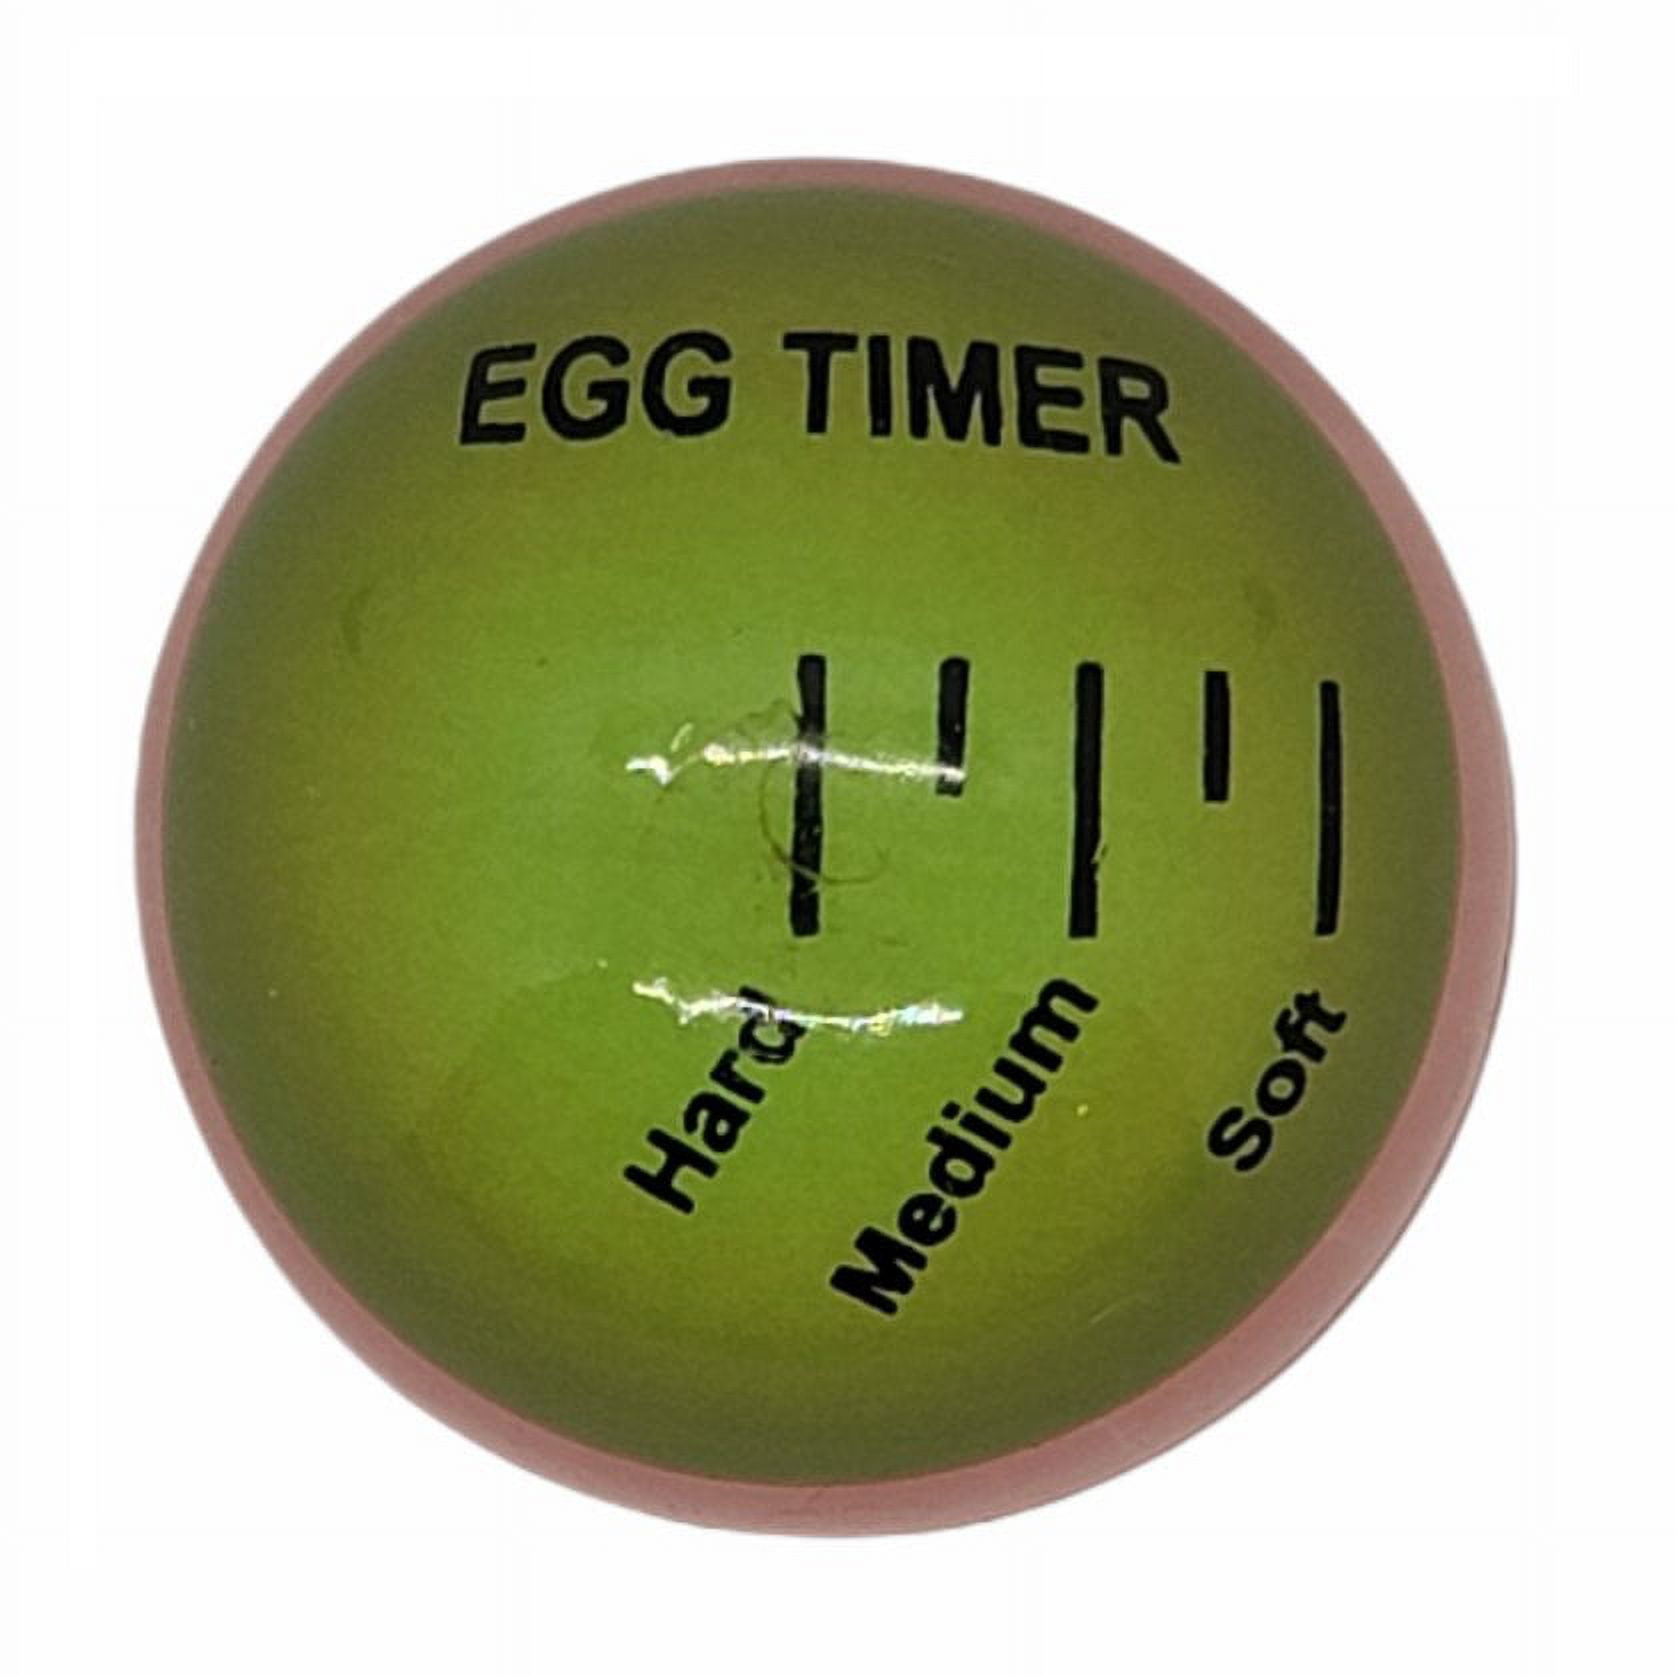 HECONOLE Egg Timer Kitchen Supplies Color Changing Boiled Eggs Cooking  Helper、Egg Timer、Egg Boiler、Egg skelter、Water Boiler、Food Thermometer for